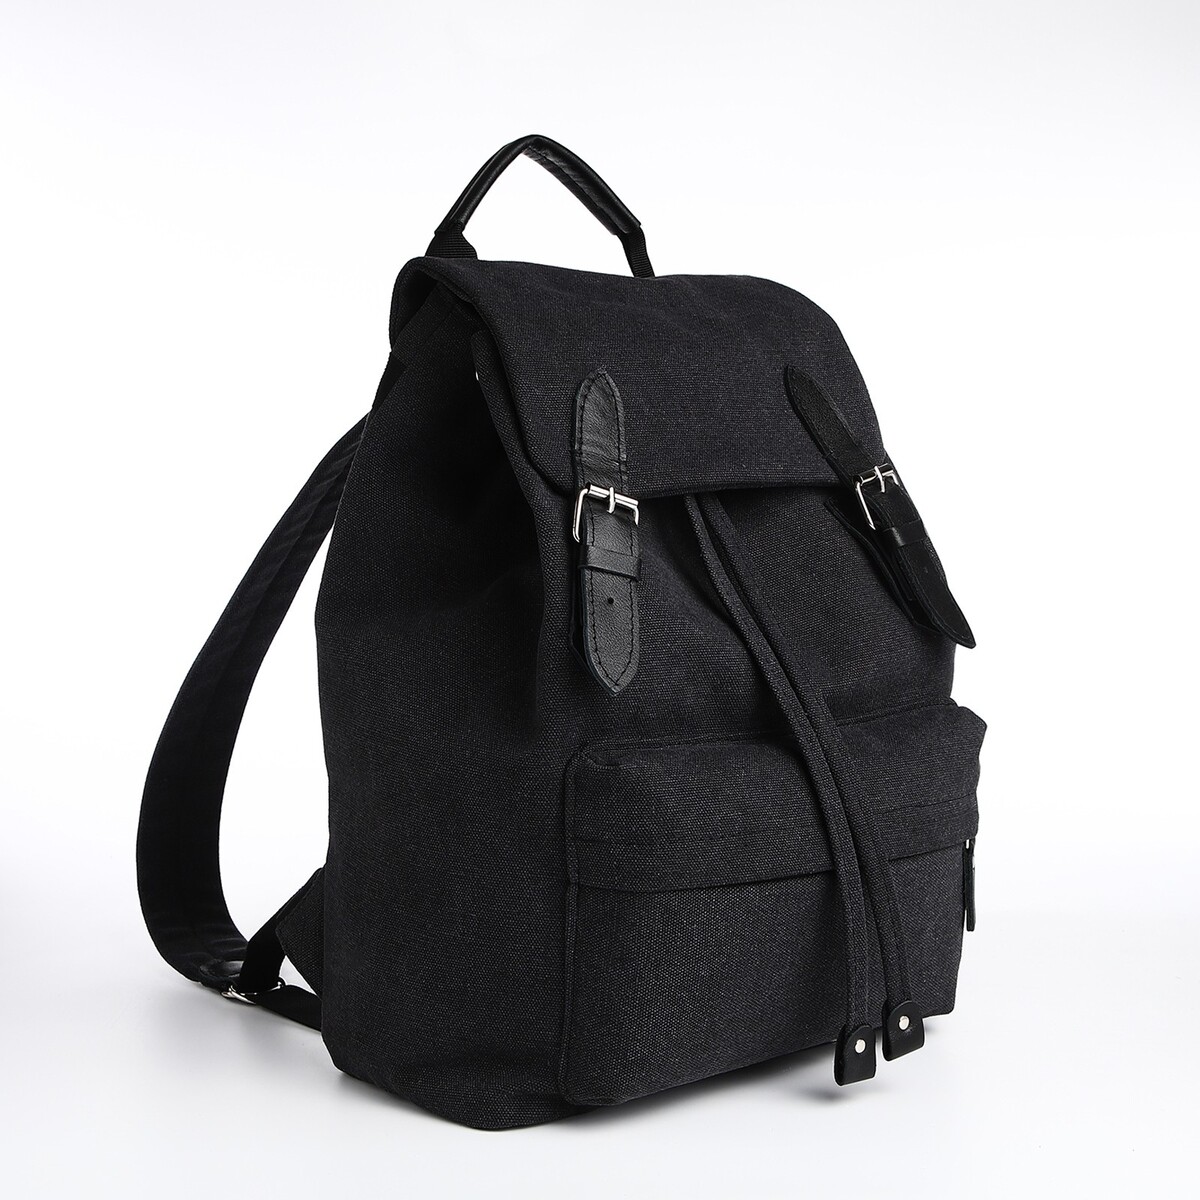 Рюкзак мужской городской textura, текстиль, цвет черный рюкзак городской textura